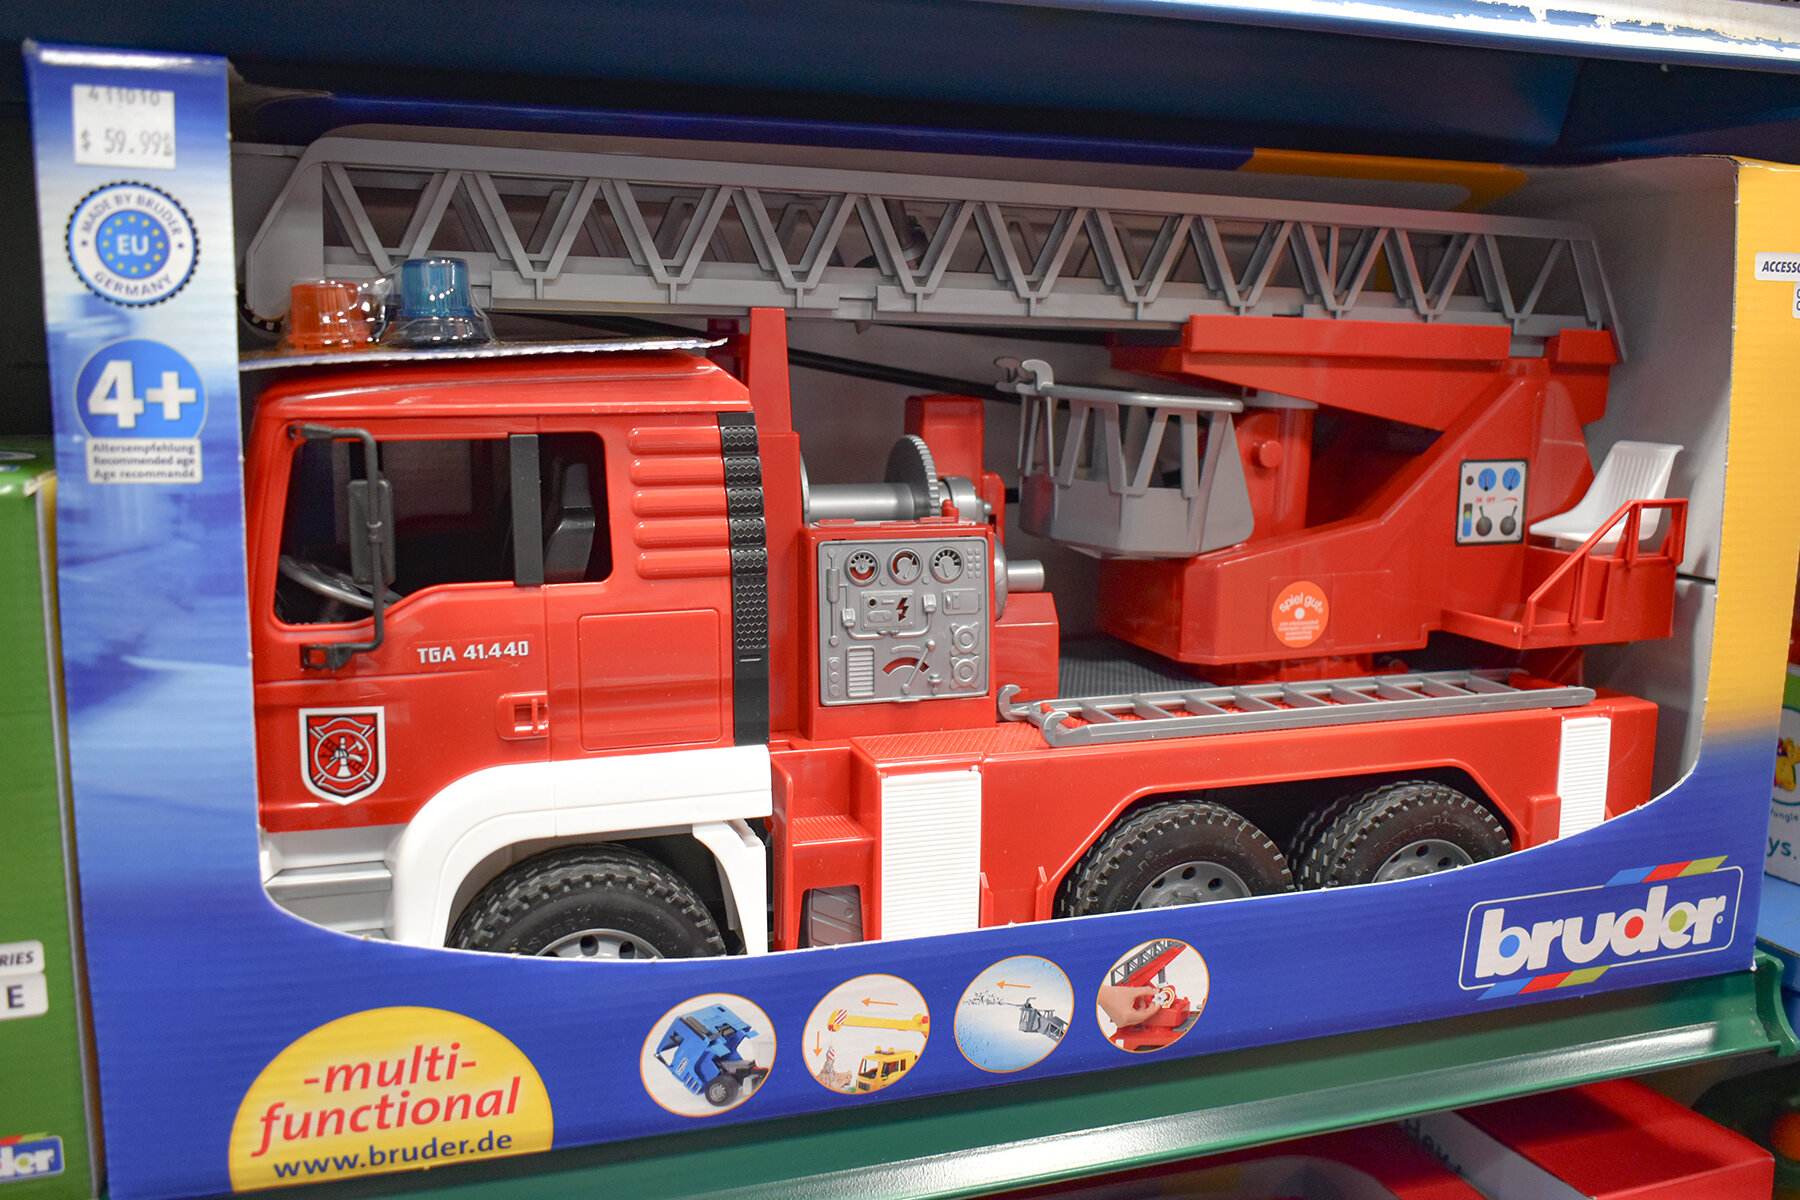 Phillips Toy Mart Bruder Fire Truck Toy.JPG